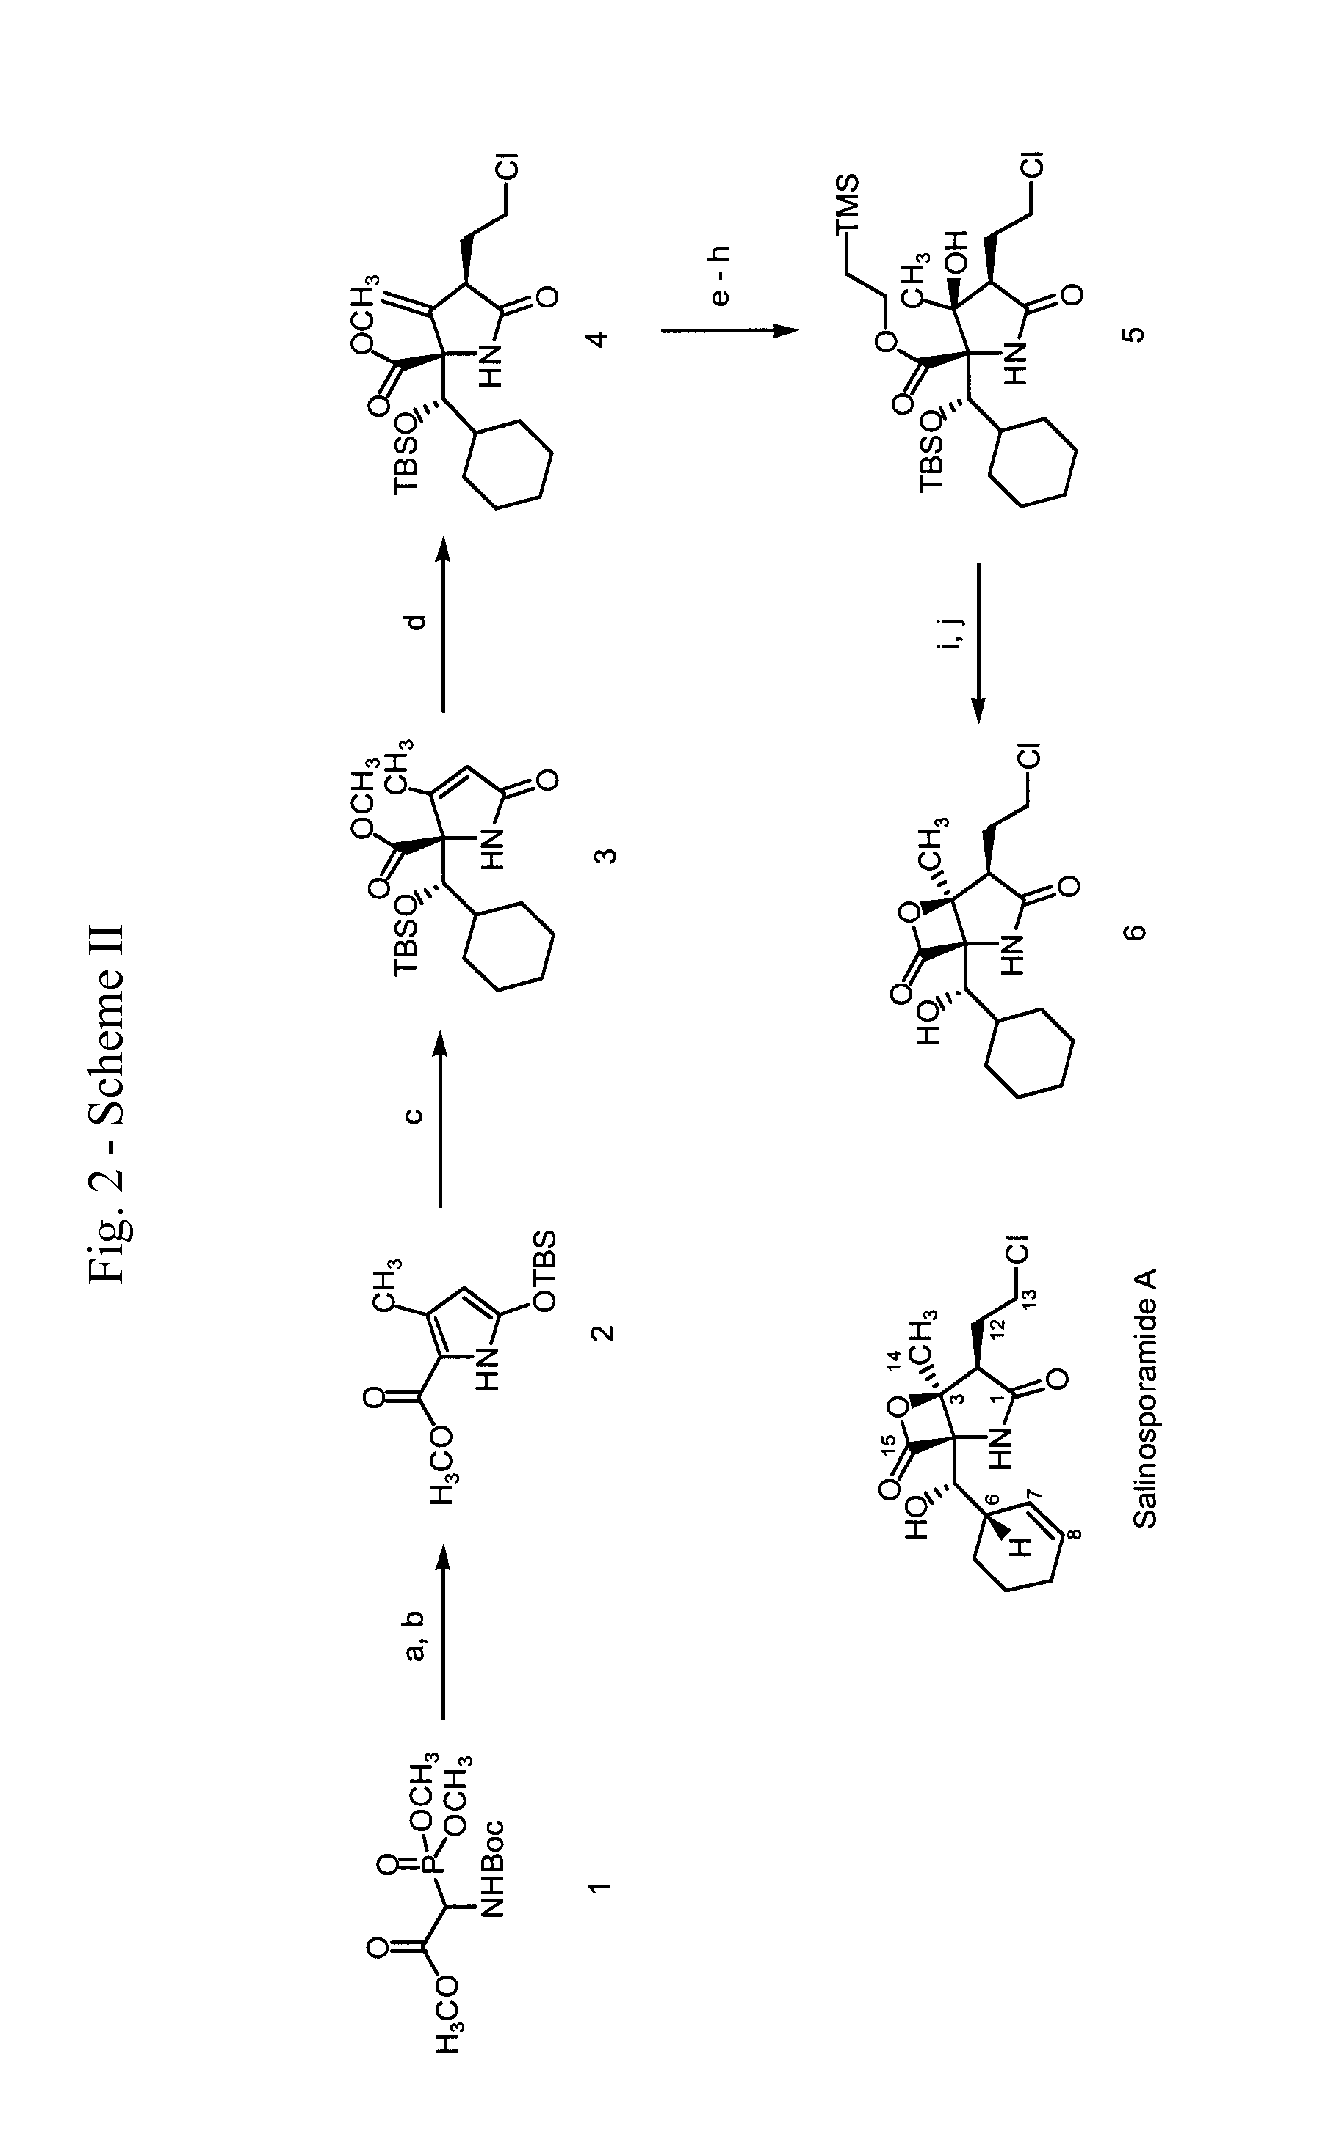 Analogs of salinosporamide A